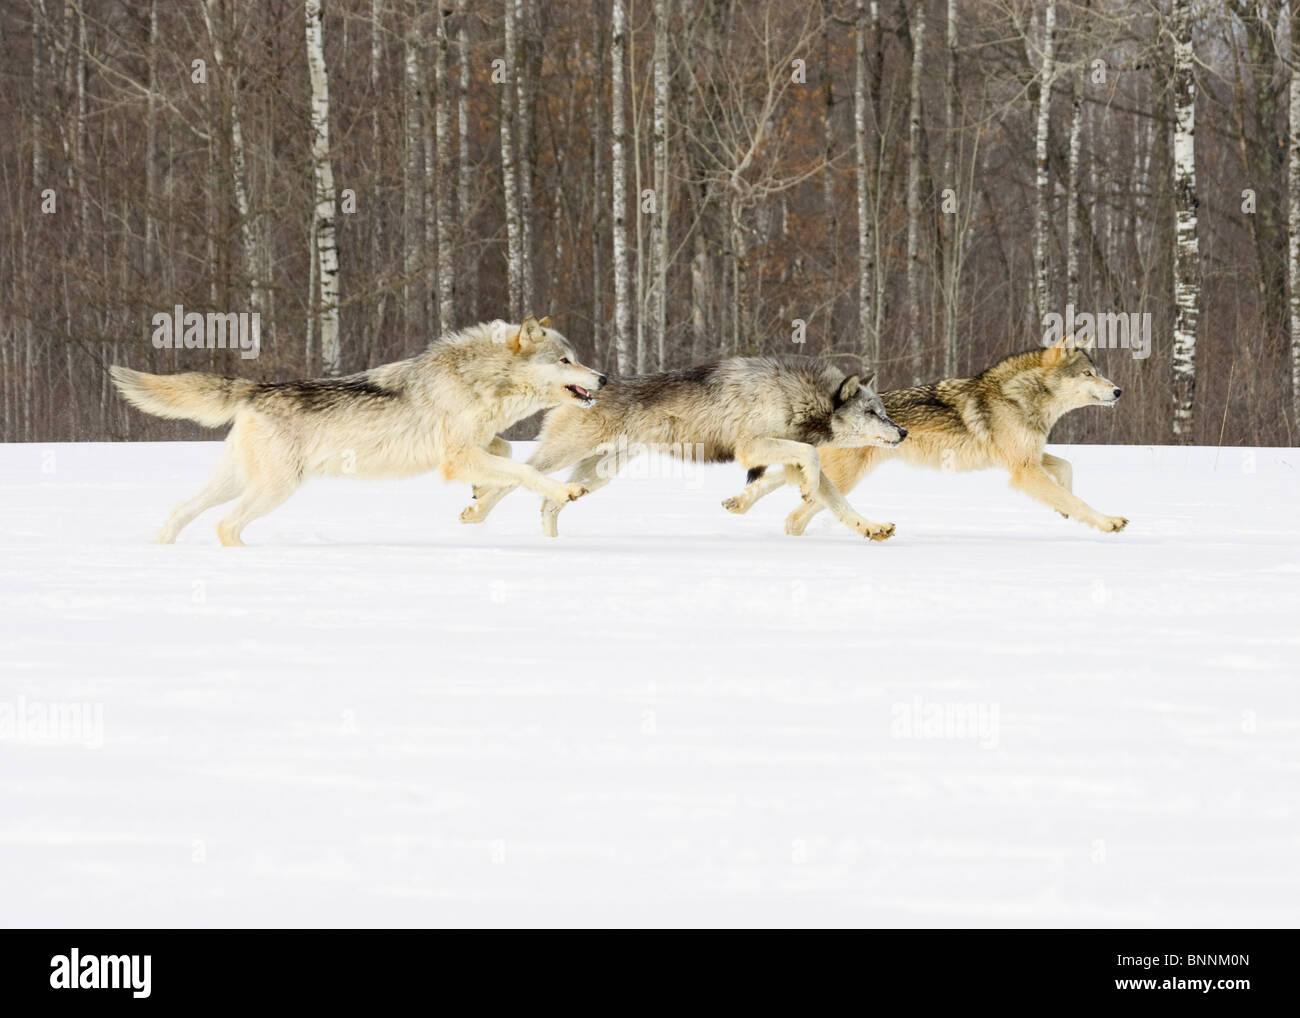 Loup gris Canis lupus au Minnesota, États-Unis Banque D'Images